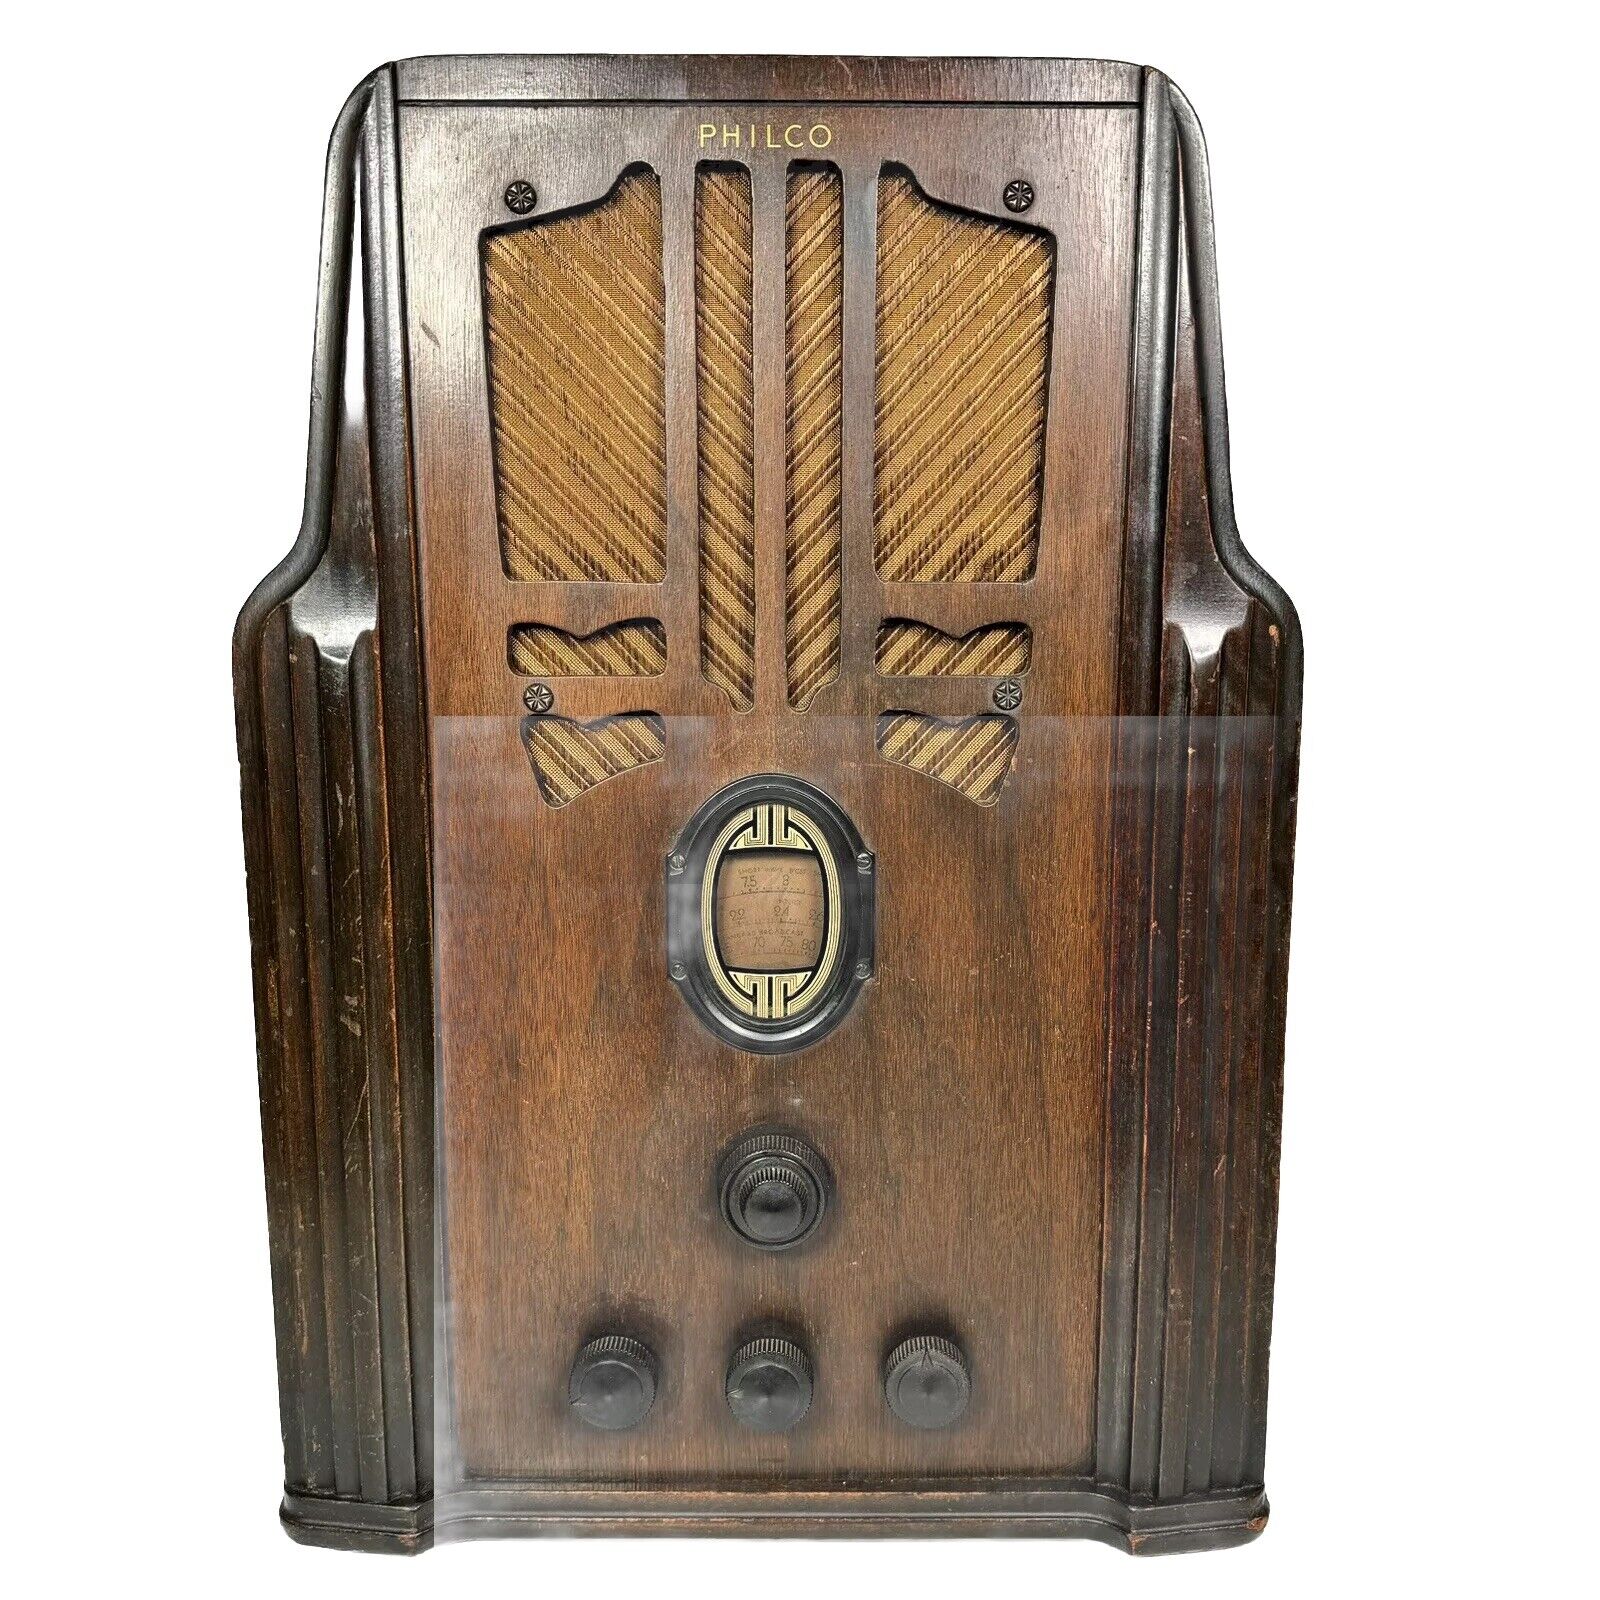 Philco Model 620 Tombstone Radio 1930’s Vtg